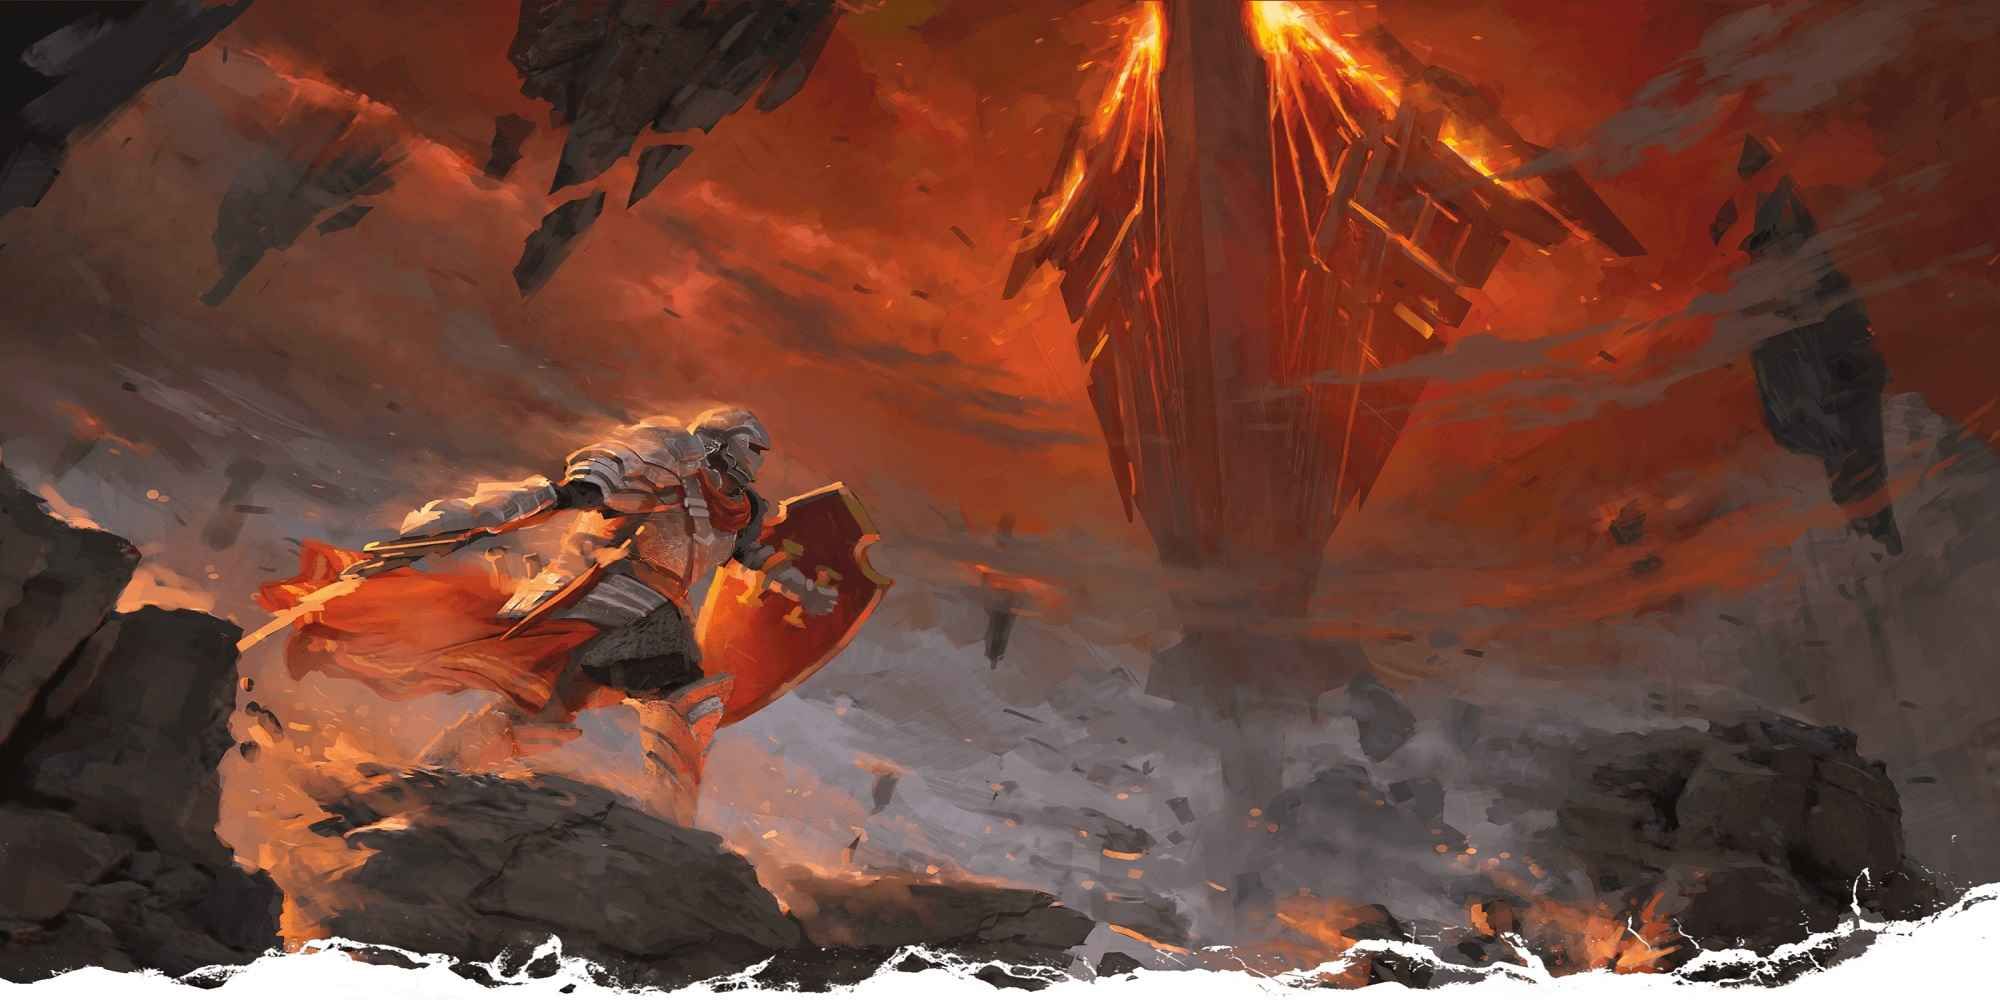 Un chevalier de Donjons & Dragons dans un plan enflammé des enfers